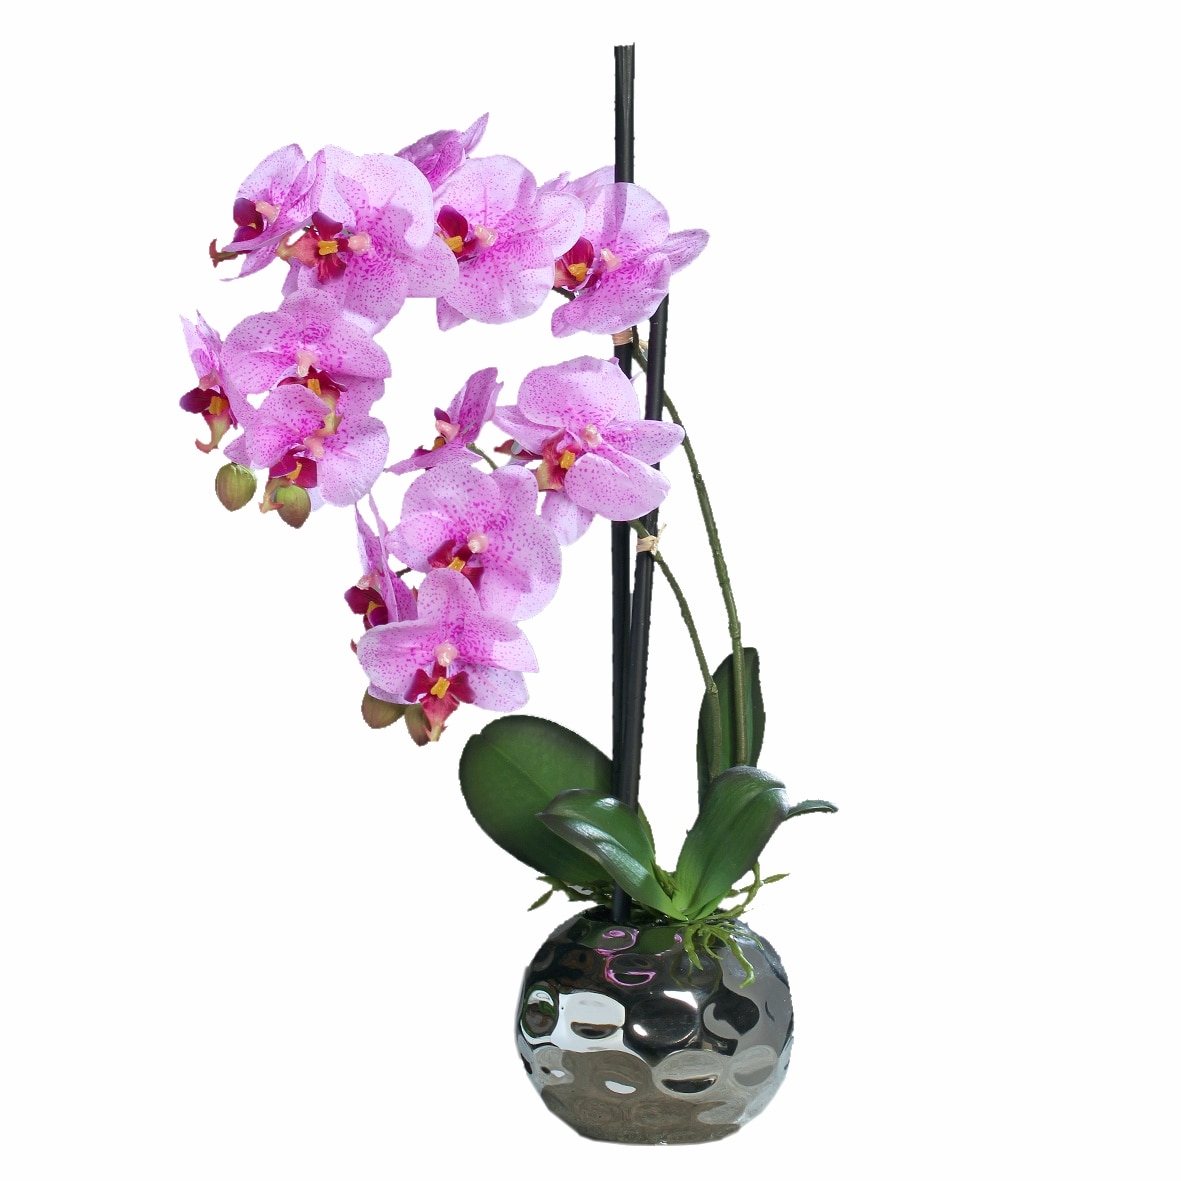 Орхидея в горшке купить в нижнем. Орхидея в горшке. Орхидея розовая в горшке. Орхидея искусственная в керамическом горшке. Орхидея в горшке с розовыми цветами.